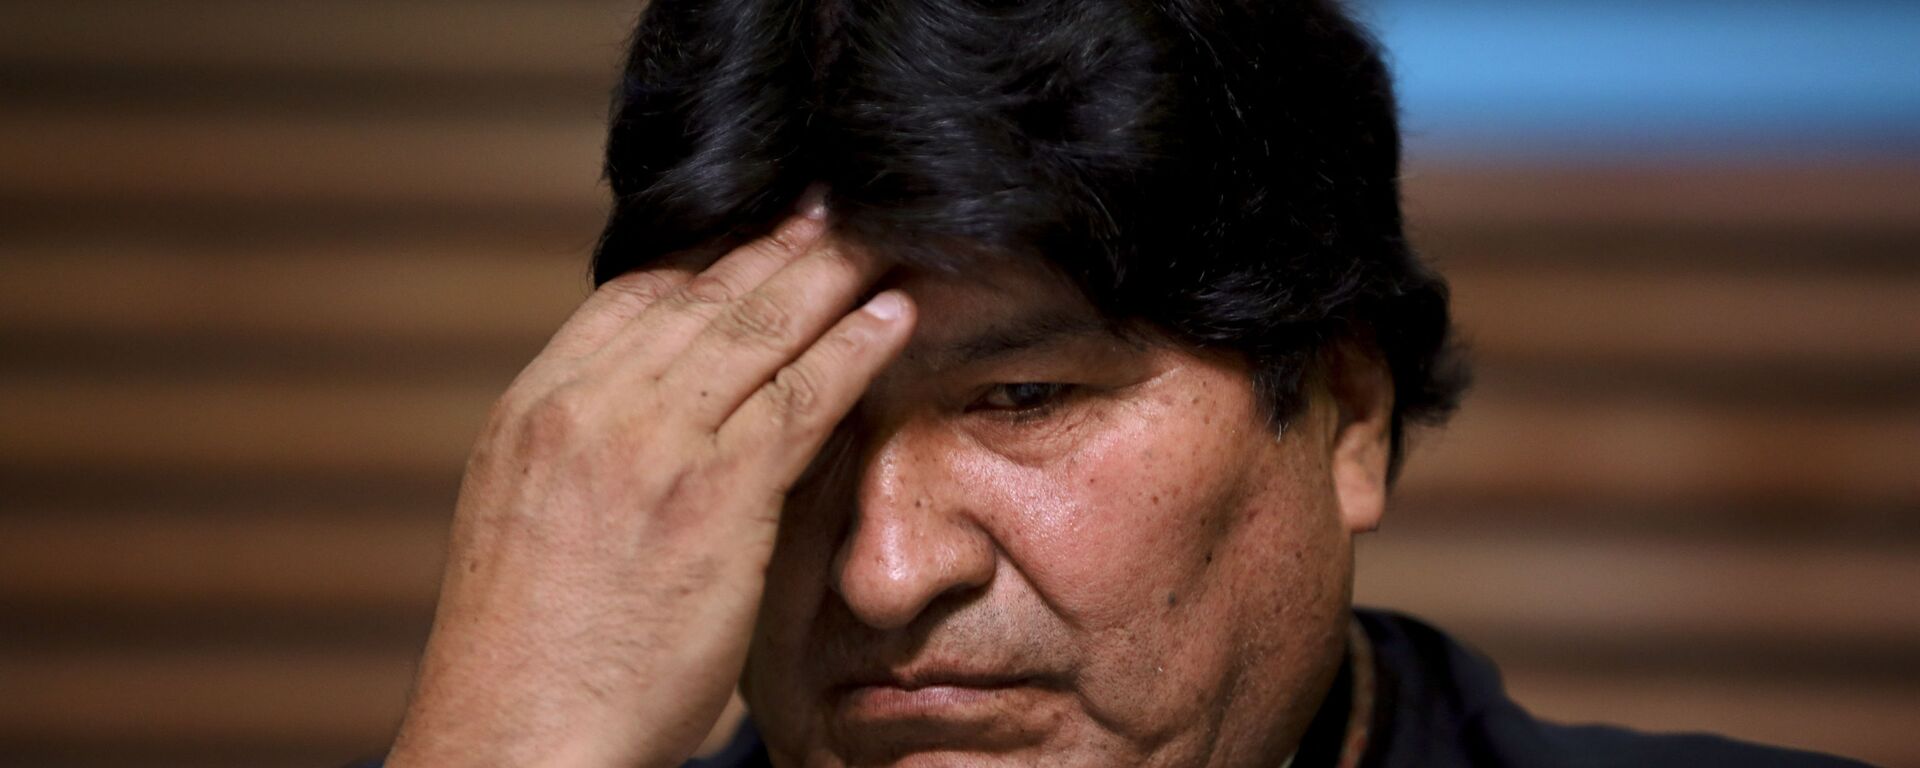 Evo Morales, expresidente de Bolivia - Sputnik Mundo, 1920, 25.03.2021